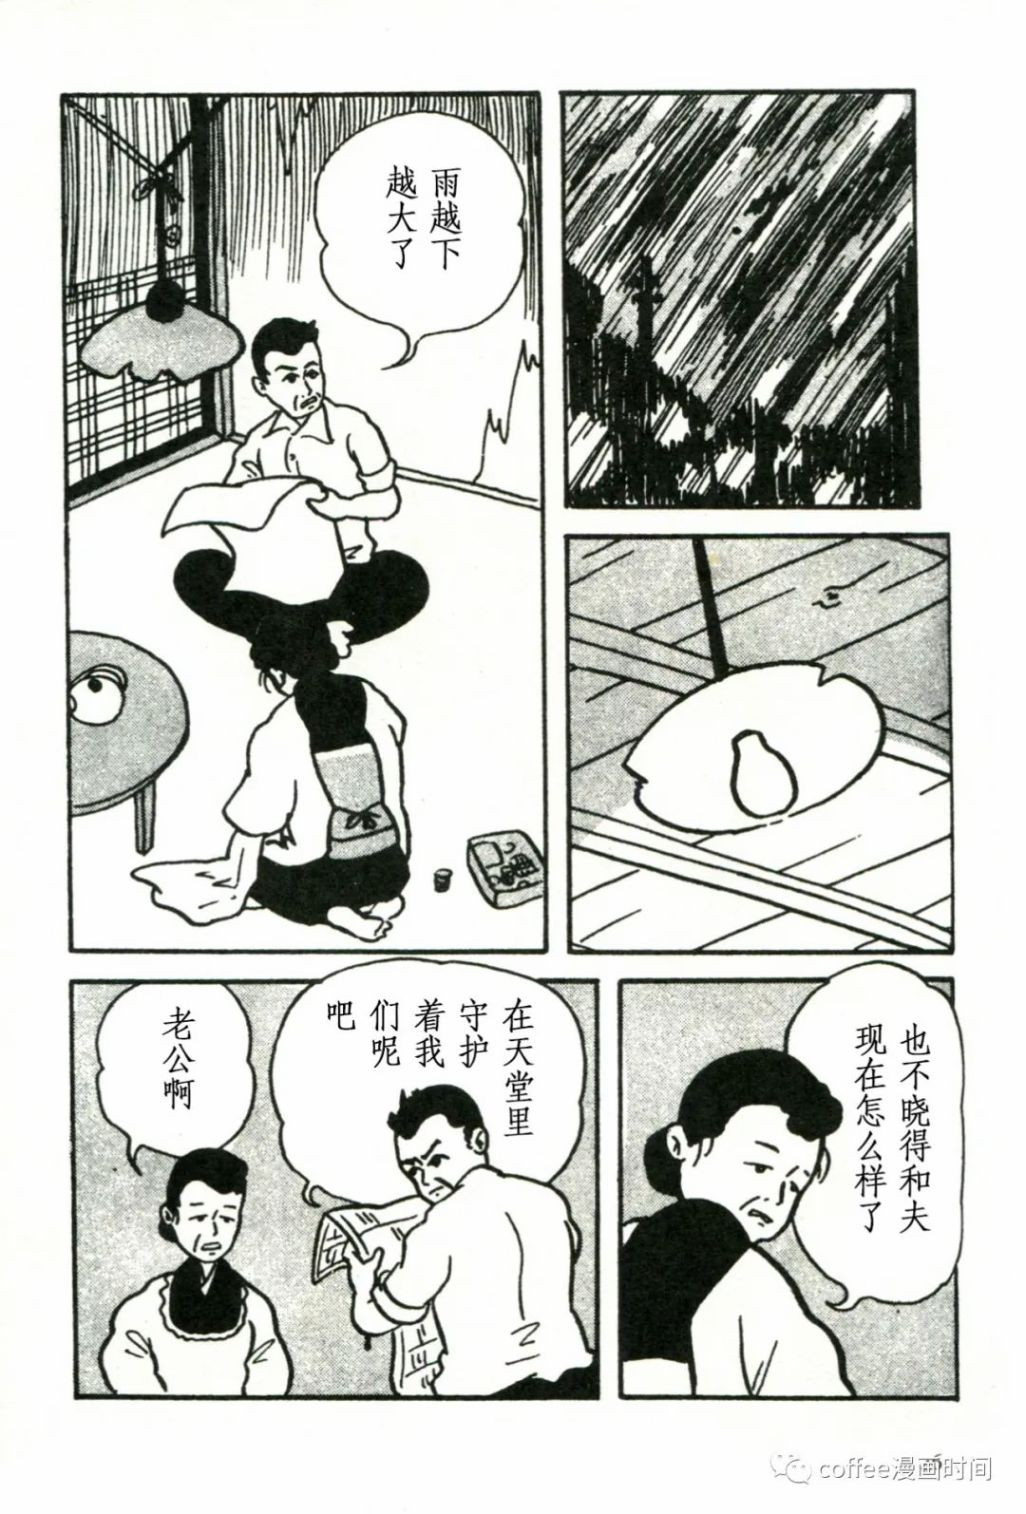 日本短篇漫畫傑作集 - 松本正彥《向骷髏許願》 - 1